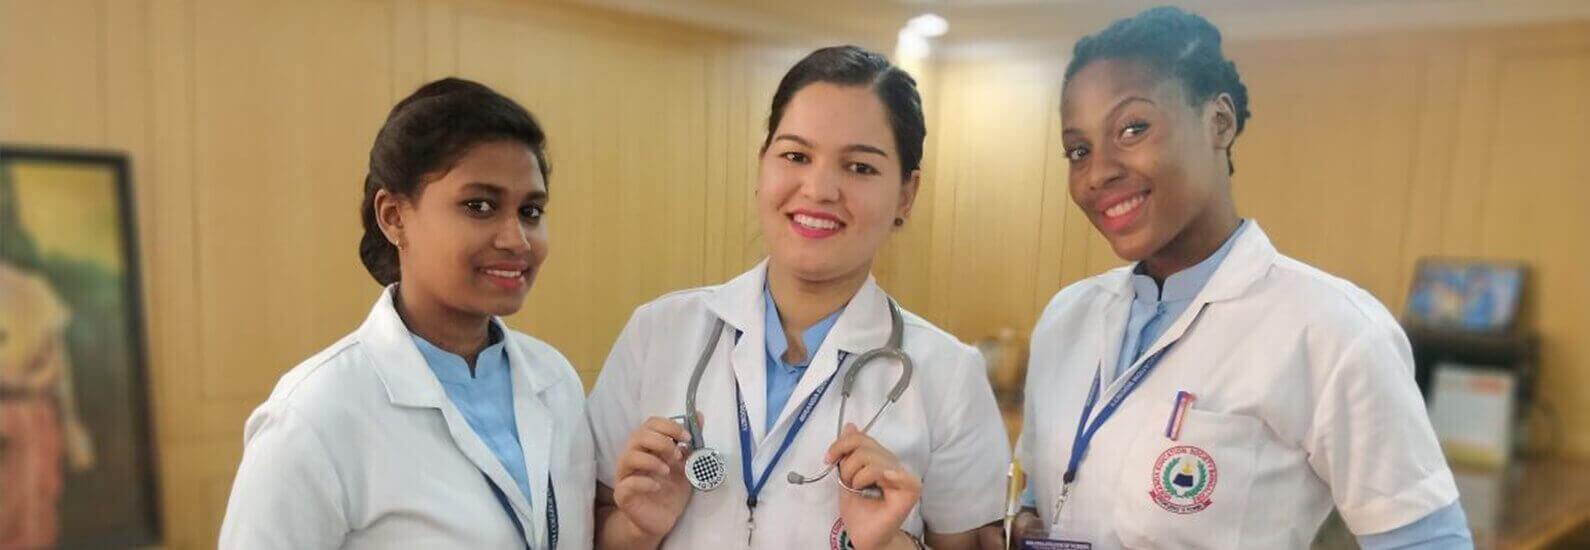 msc nursing colleges in bangalore